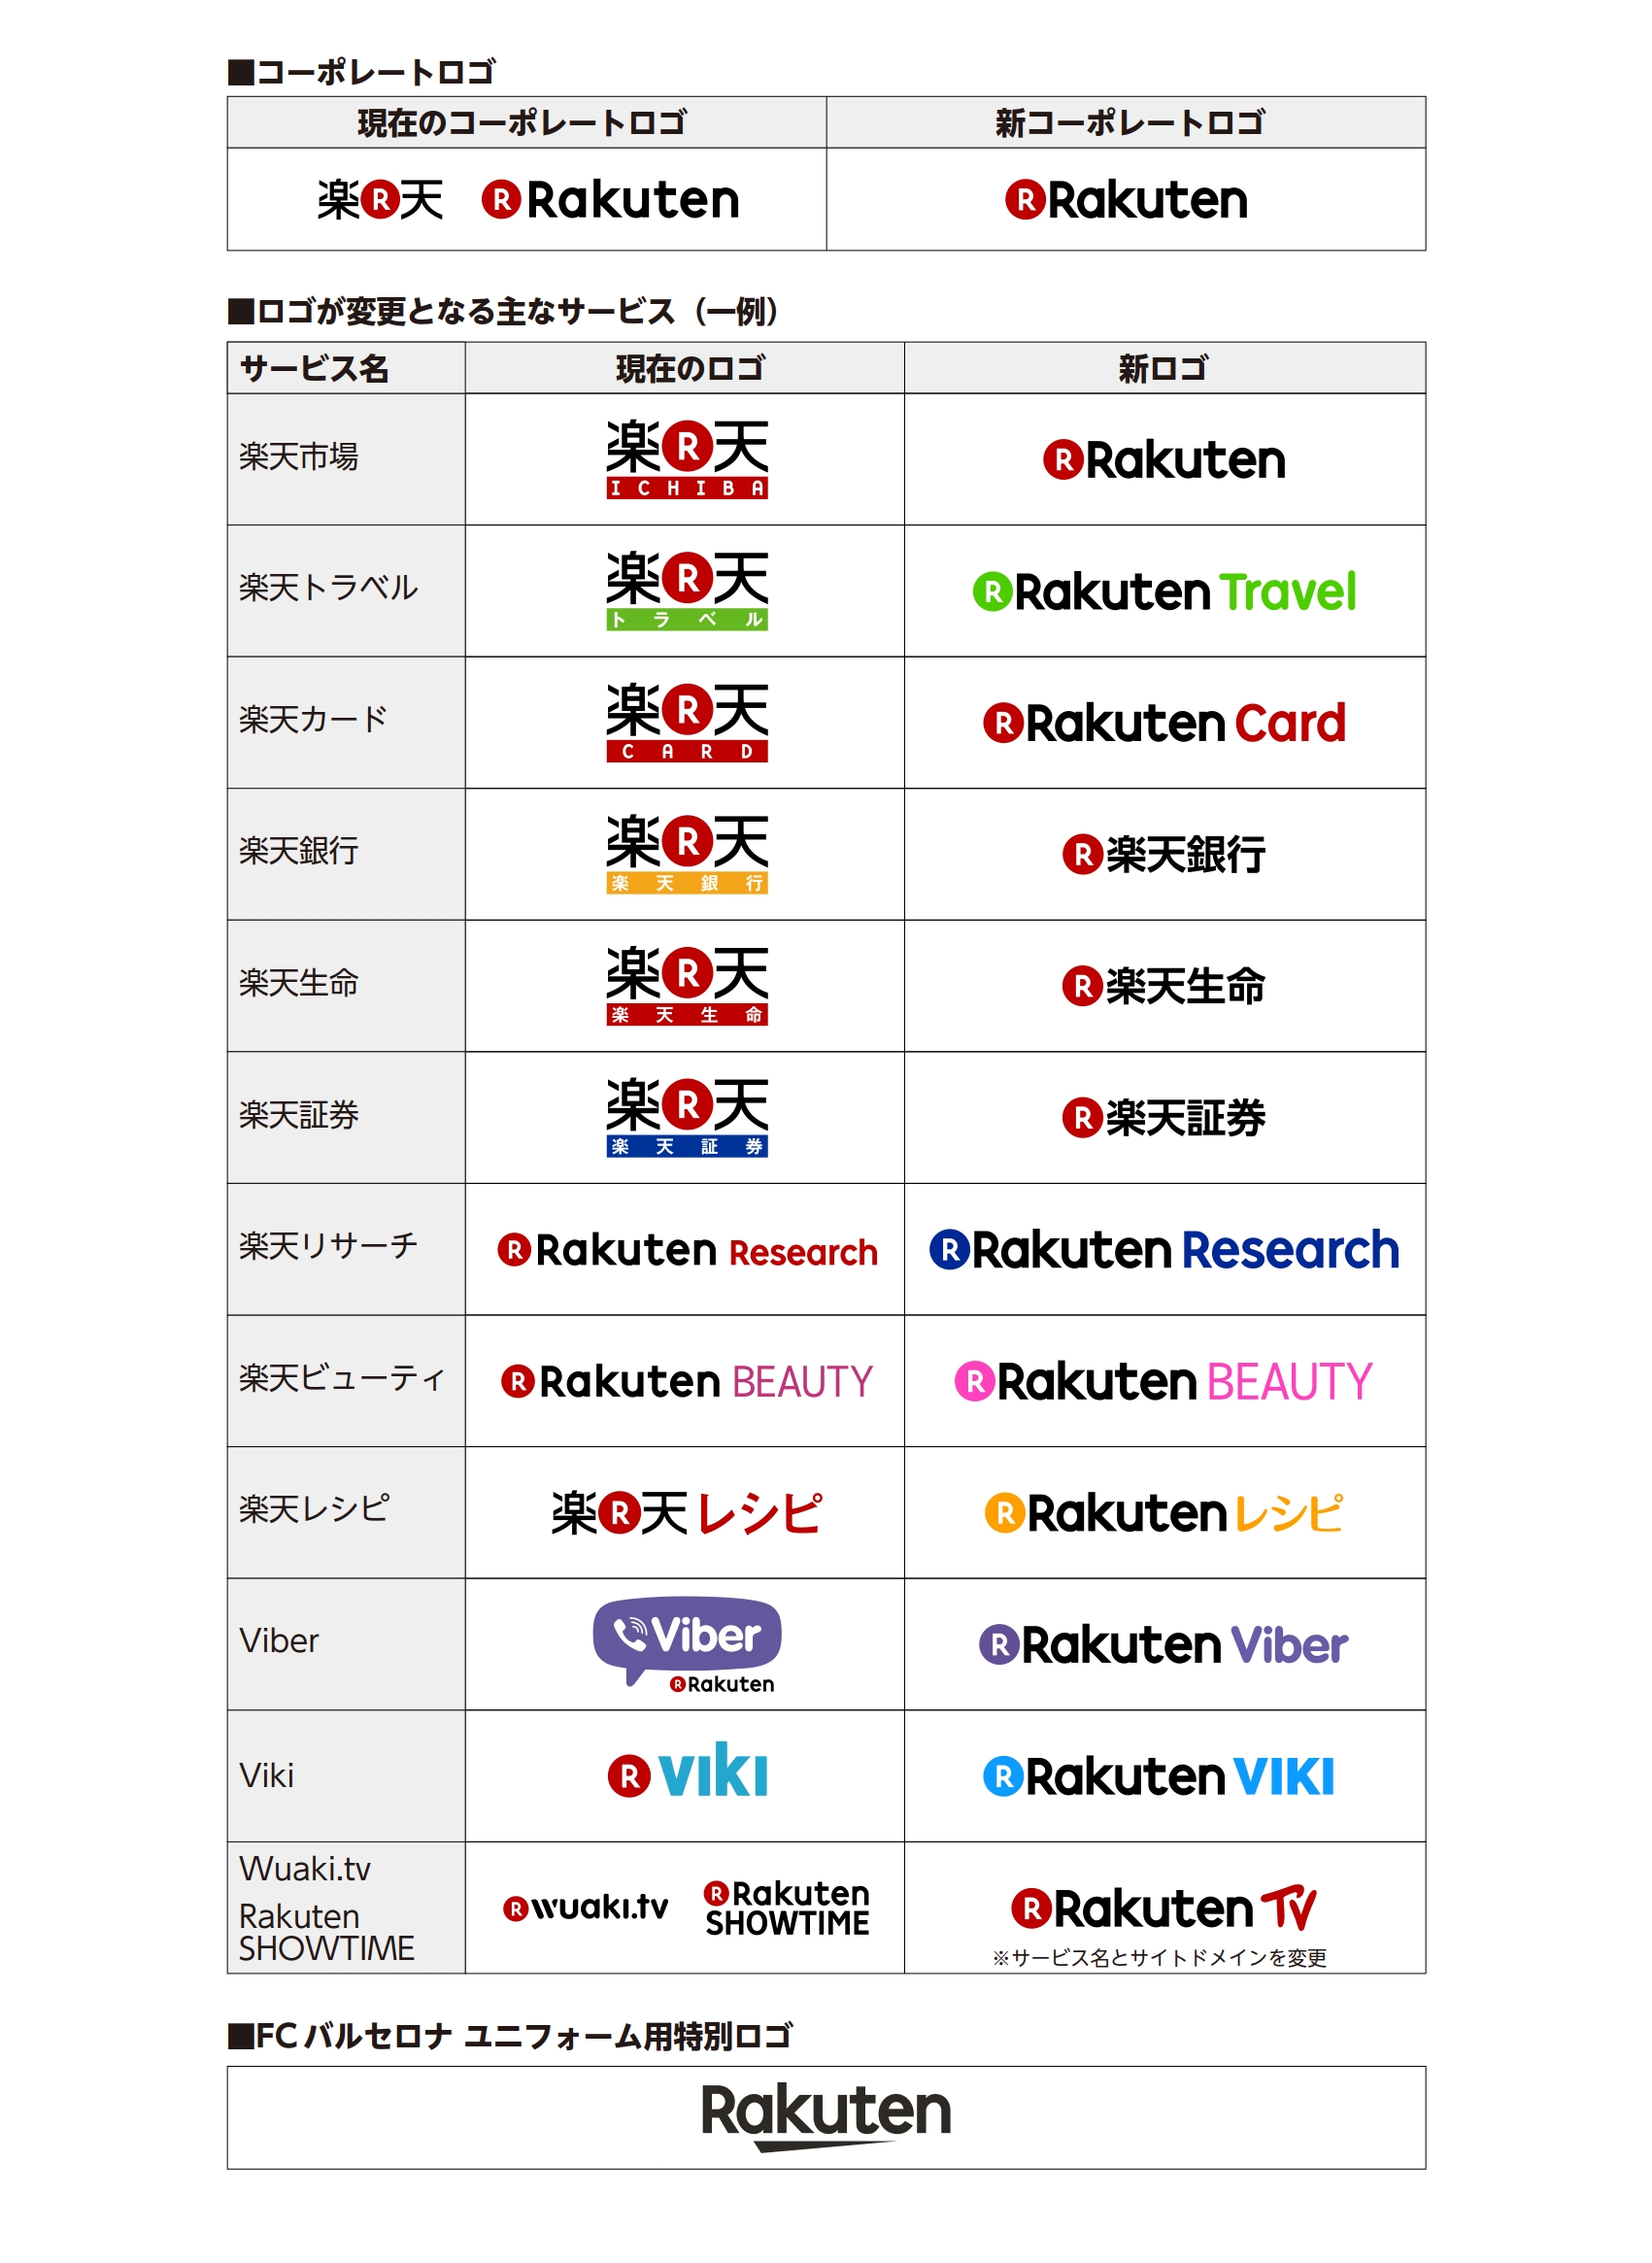 楽天株式会社 楽天グループ グローバルで Rakuten ブランドを強化 ニュース